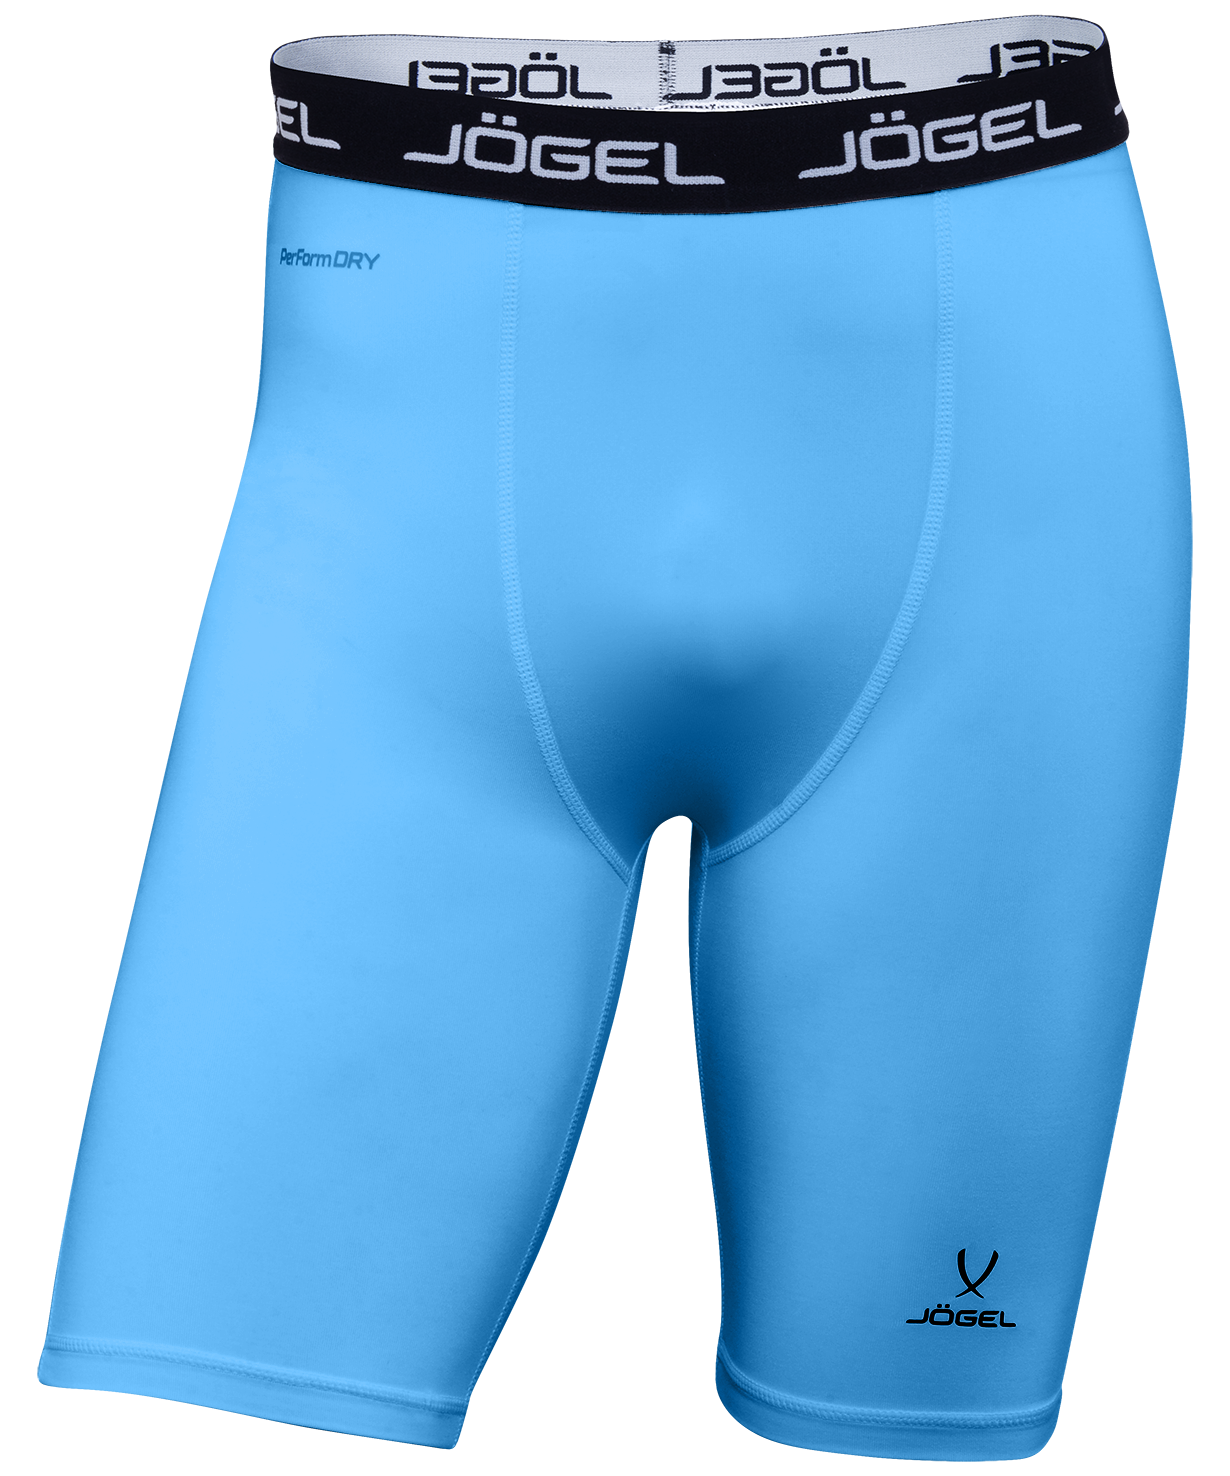 Шорты компрессионные Jogel Camp Performdry Tight Short, голубой/белый (XXL)